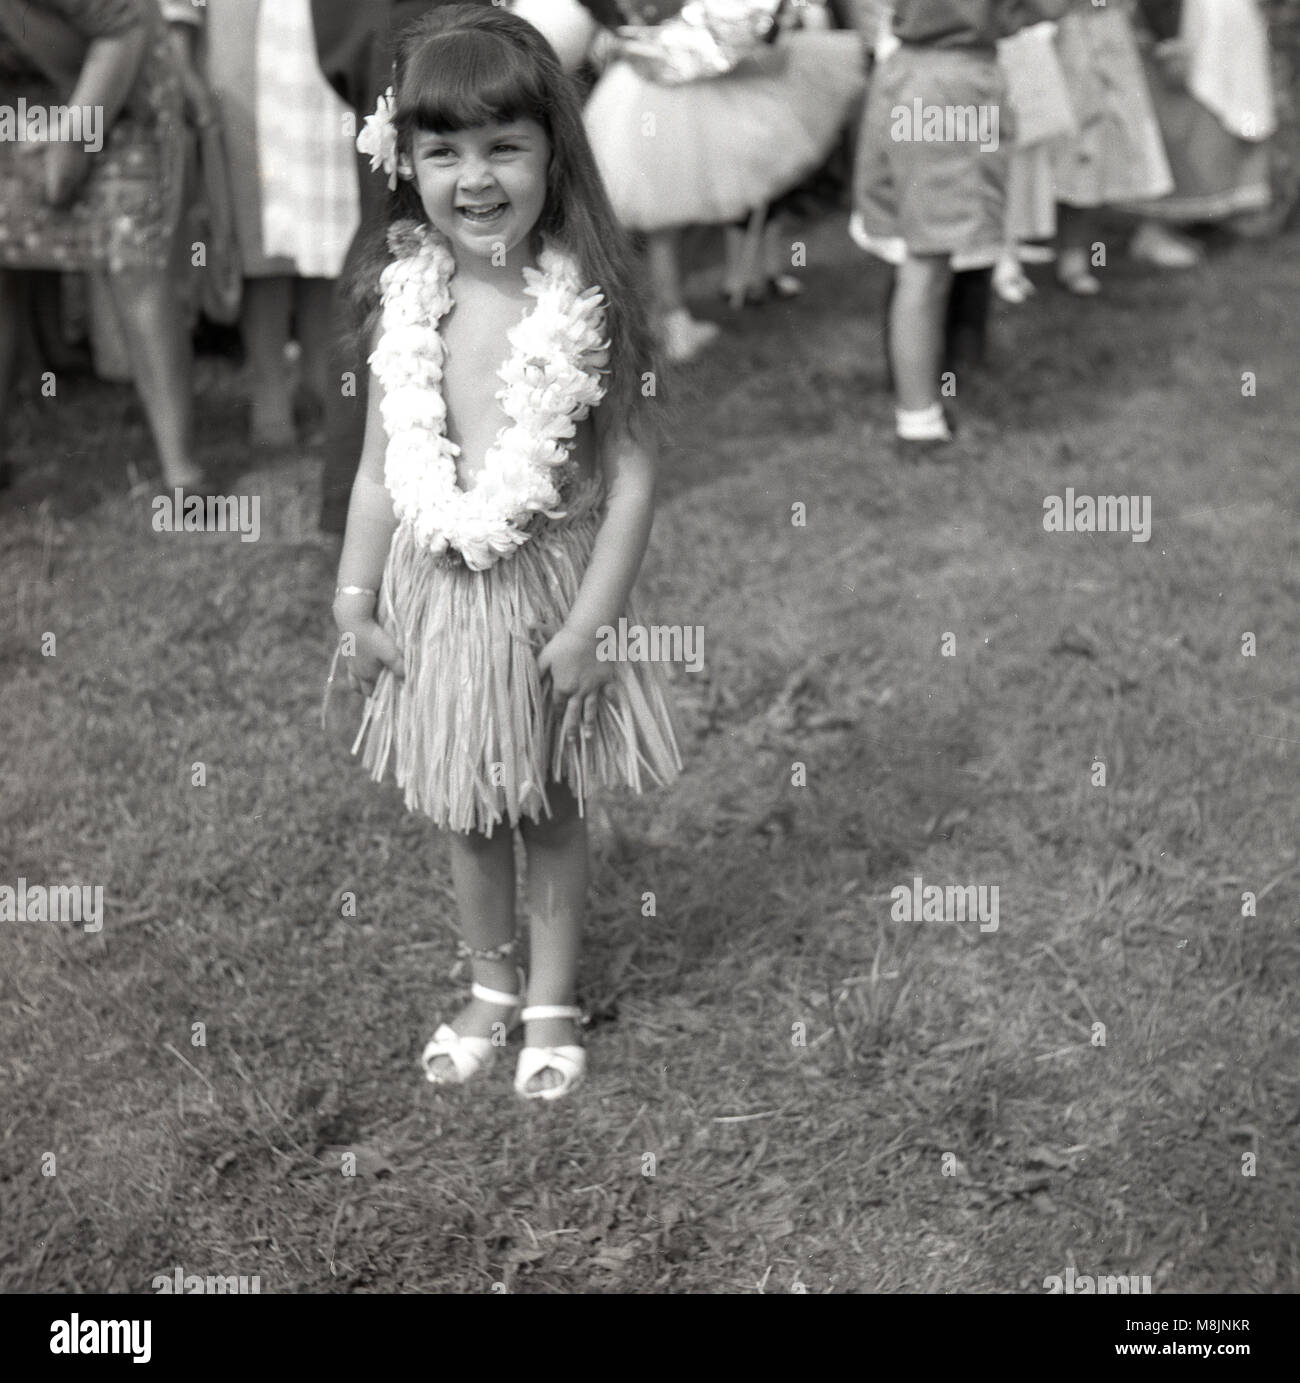 Années 1950, tableau historique, une petite fille heureuse fête de l'extérieur permanent smiling, portant fièrement son costume d'un hula ou jupe d'herbe avec collier de fleurs dans un bassin pour les concours costumé. Banque D'Images